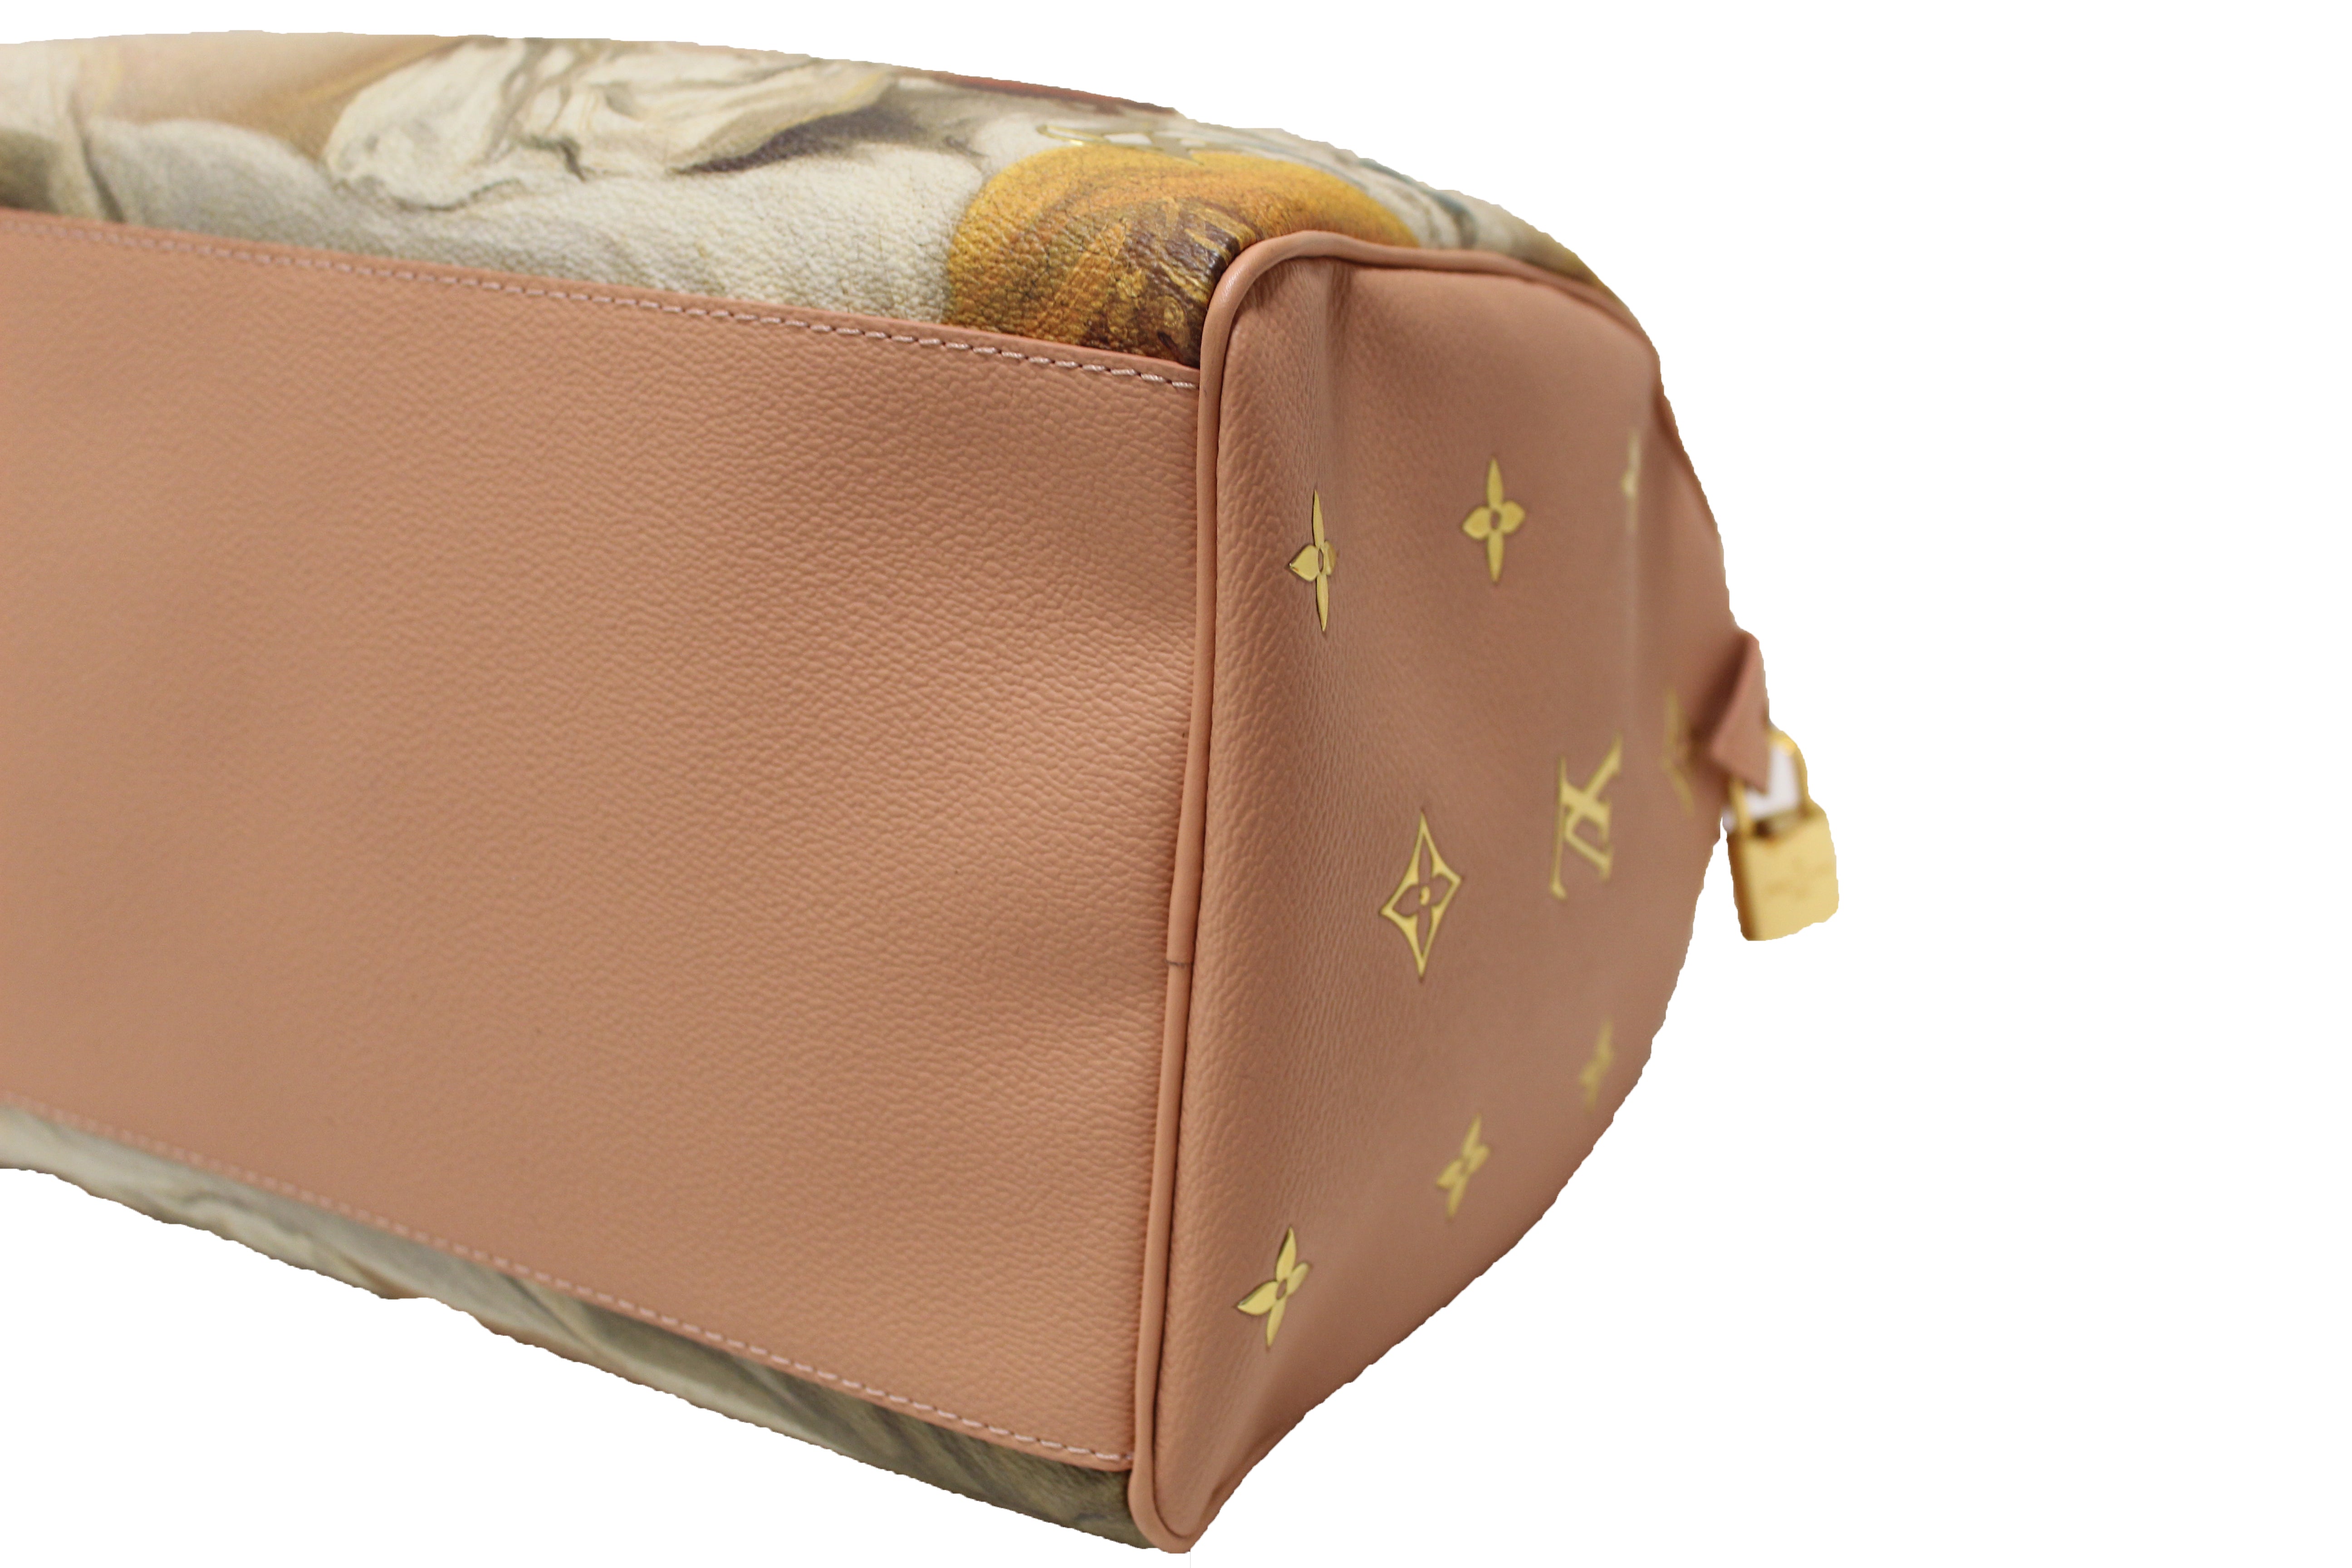 Louis Vuitton Masters x Jeff Koons Pink Speedy 30 Fragonard Bag